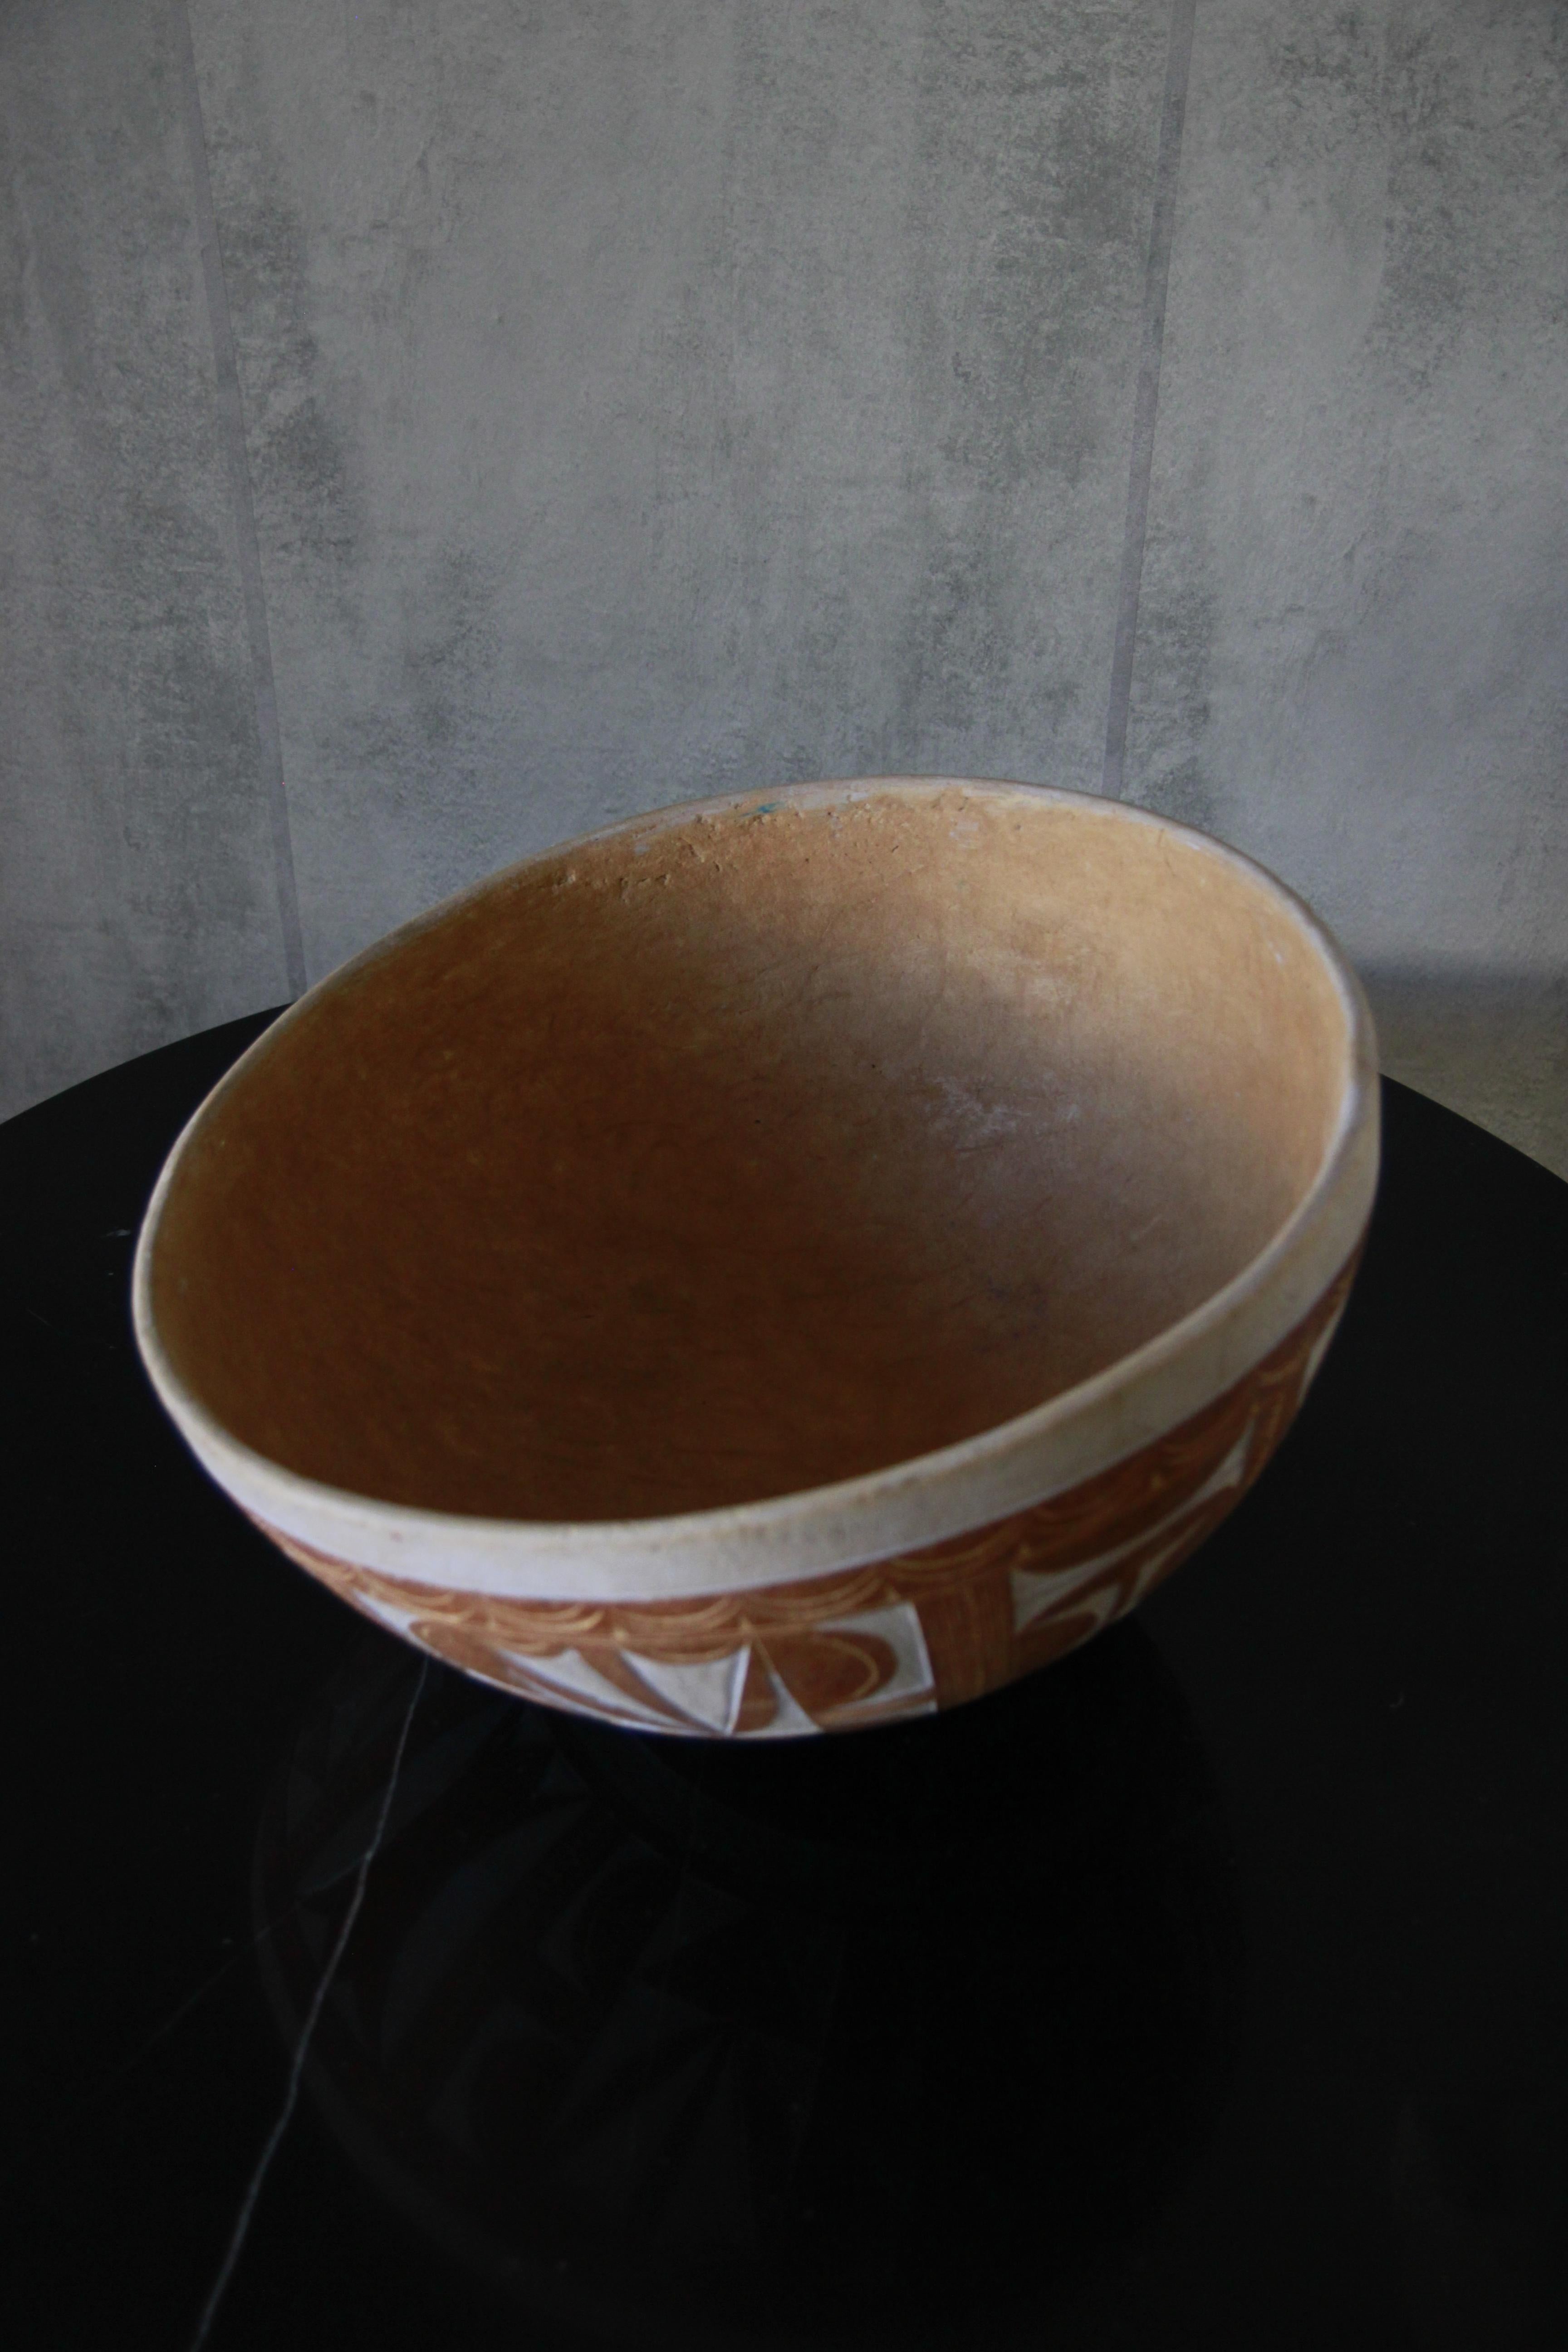 calabash bowl spiritual meaning